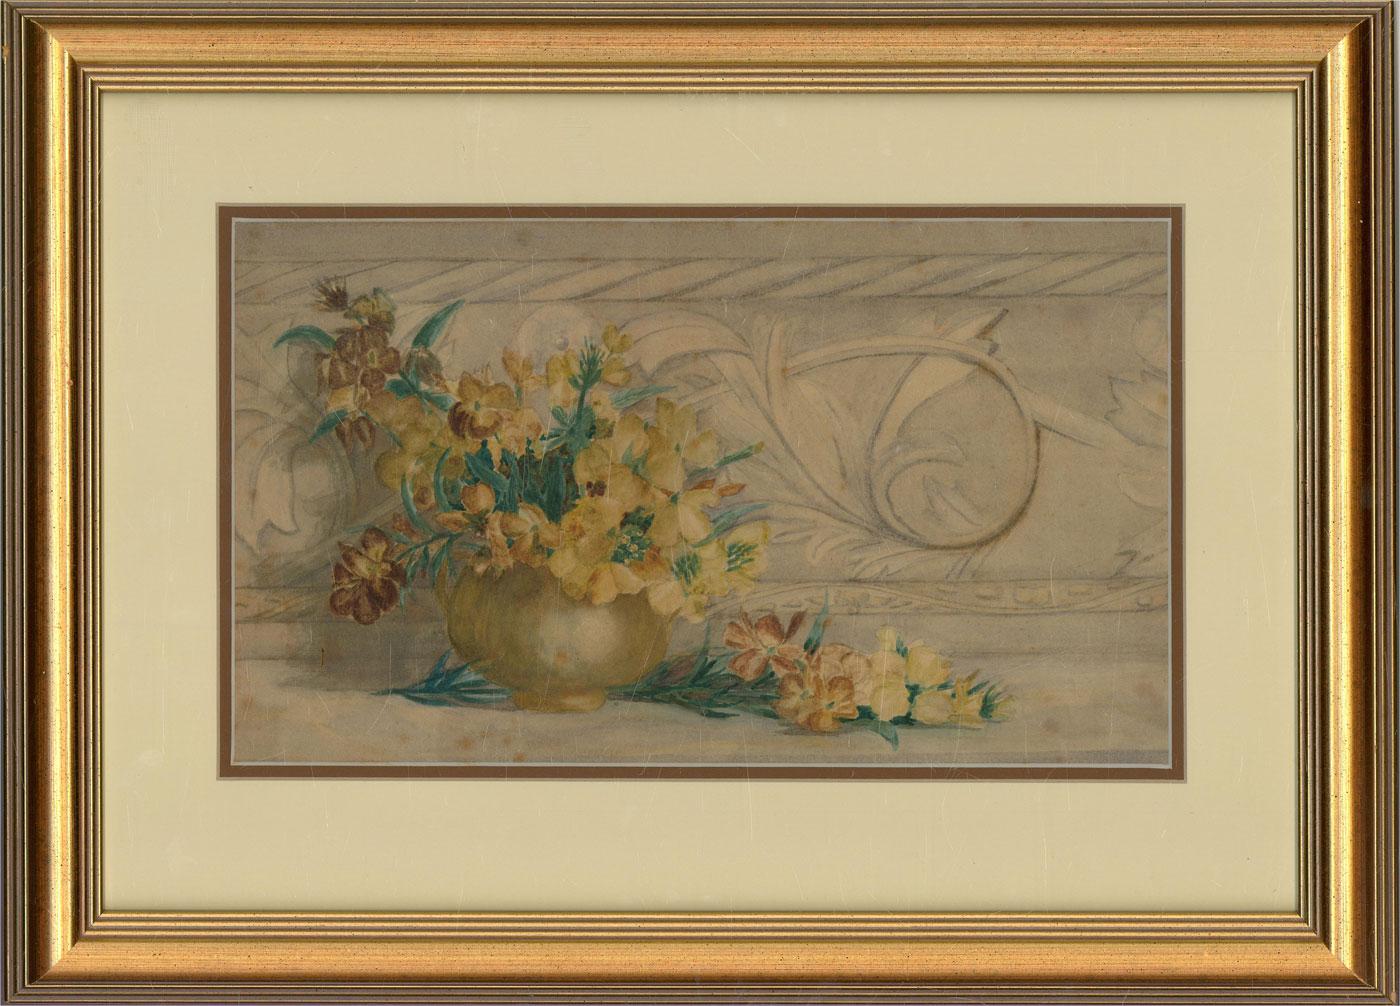 Ein feines und zartes Aquarell, das eine kurze Vase mit gelben Blumen darstellt. Nicht signiert. Gut präsentiert in einem doppelten Passepartout und in einem gesprenkelten Rahmen mit Goldeffekt. Auf Aquarellpapier.